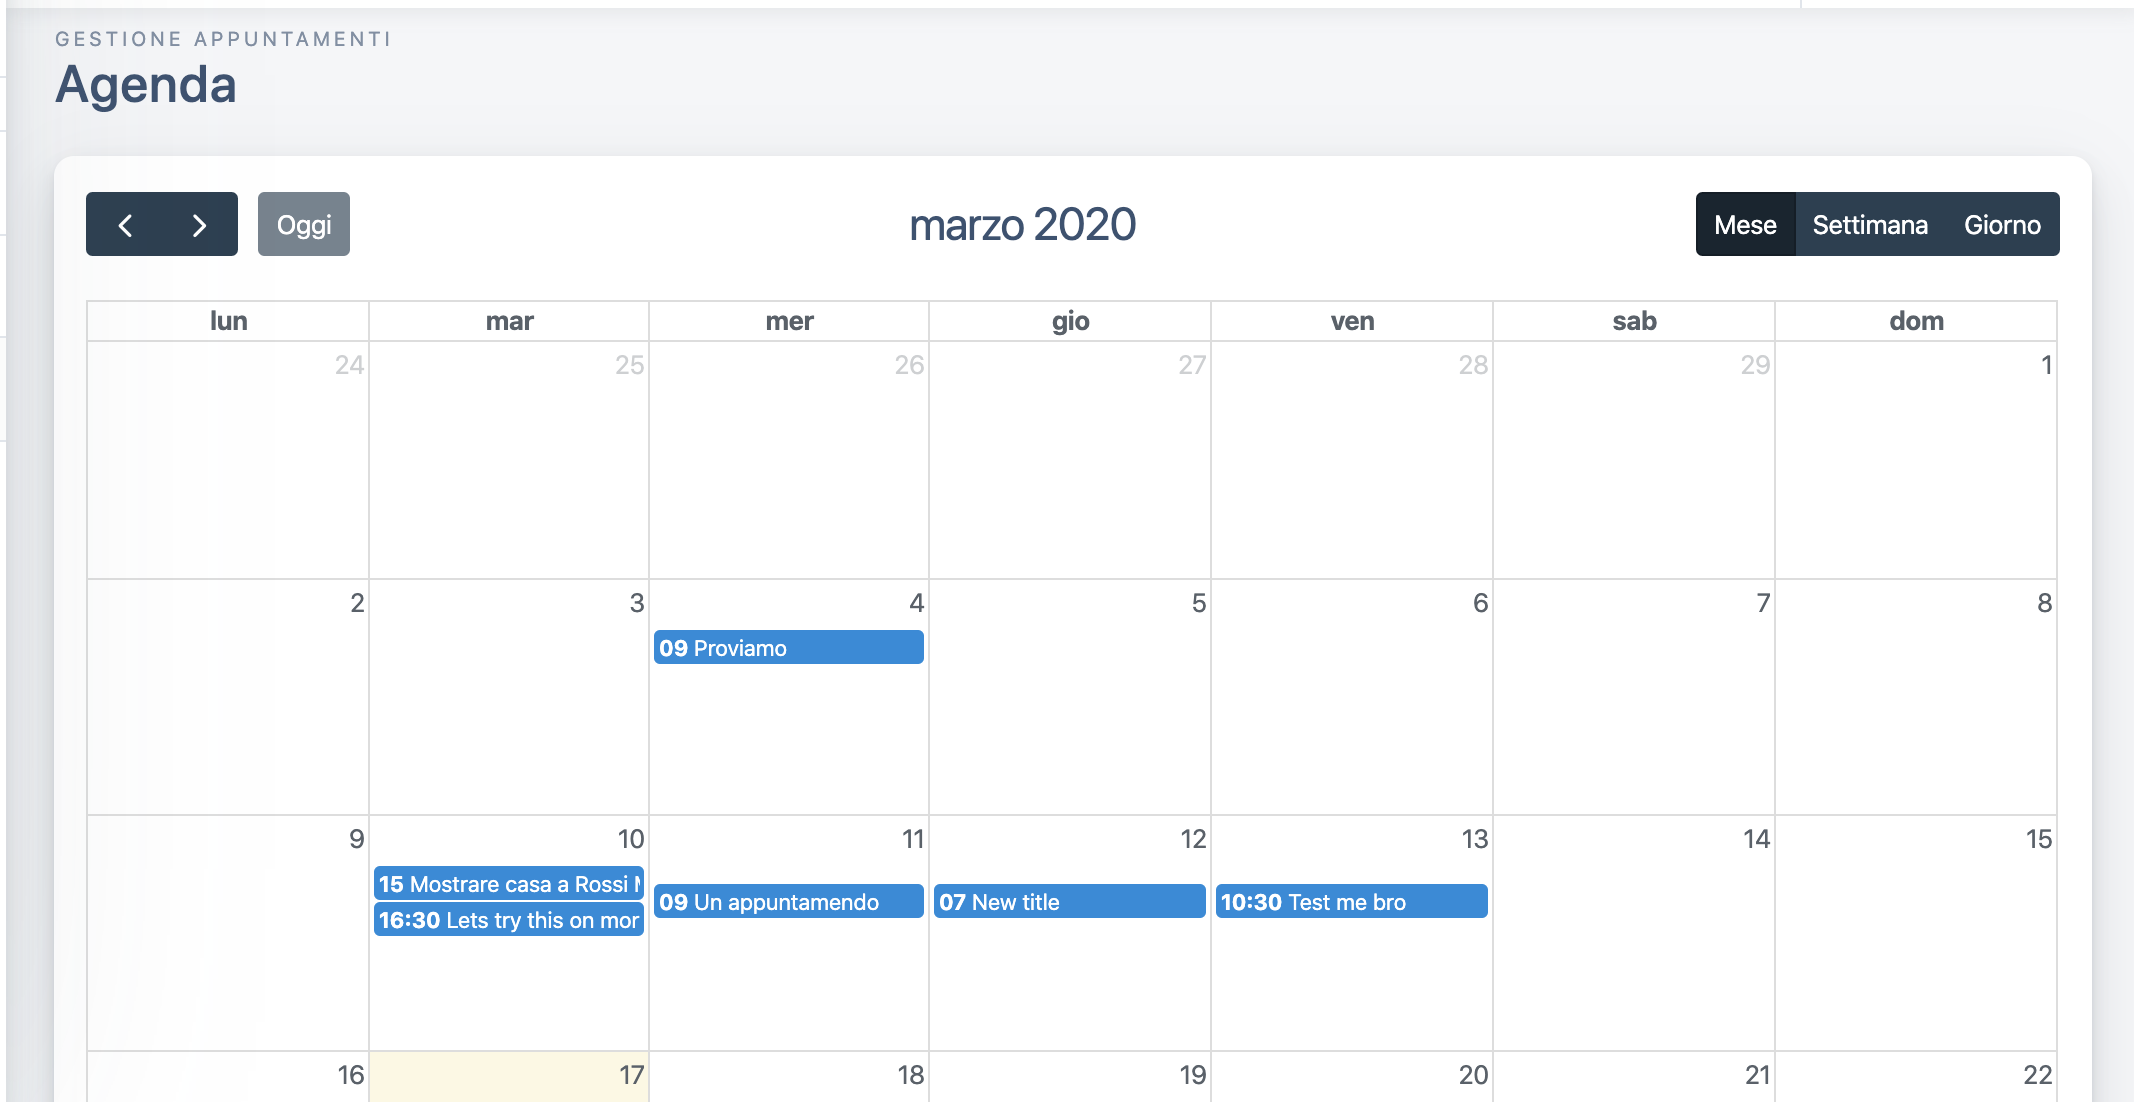 A screenshot of the calendar